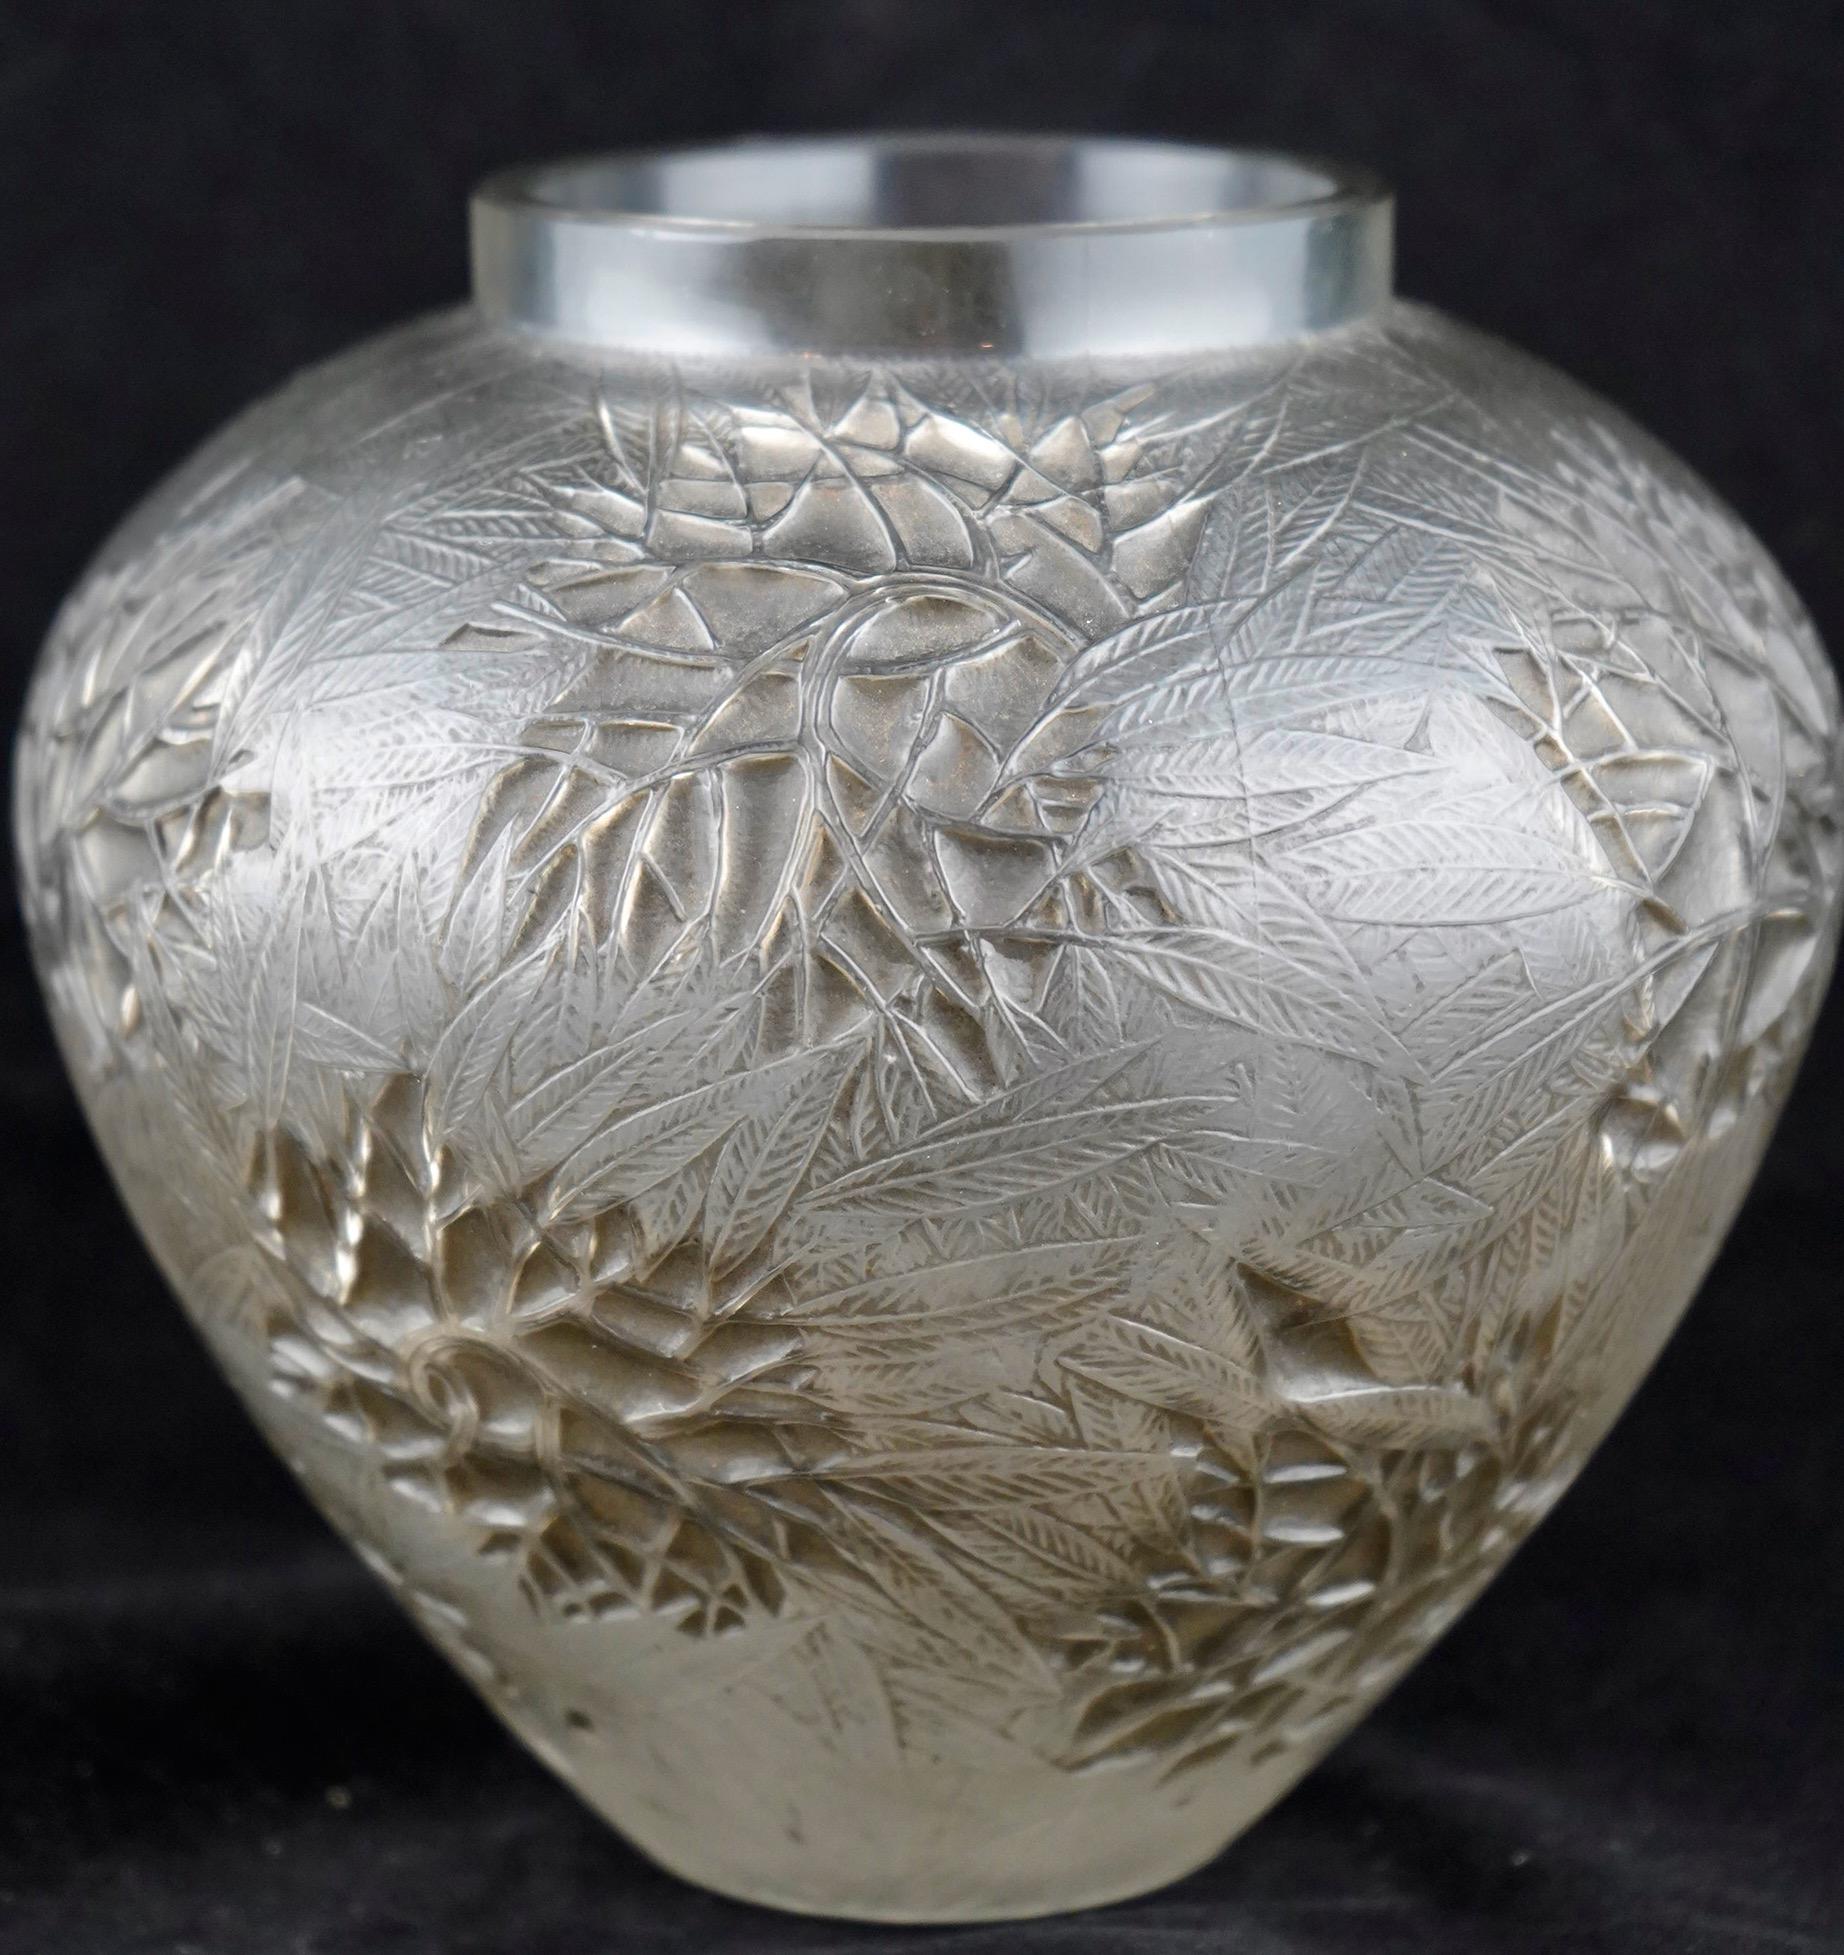 Vase Esterel au design Rene Lalique de 1923 en patine grise. La base est ornée d'une signature polie et moulée de l'usine.